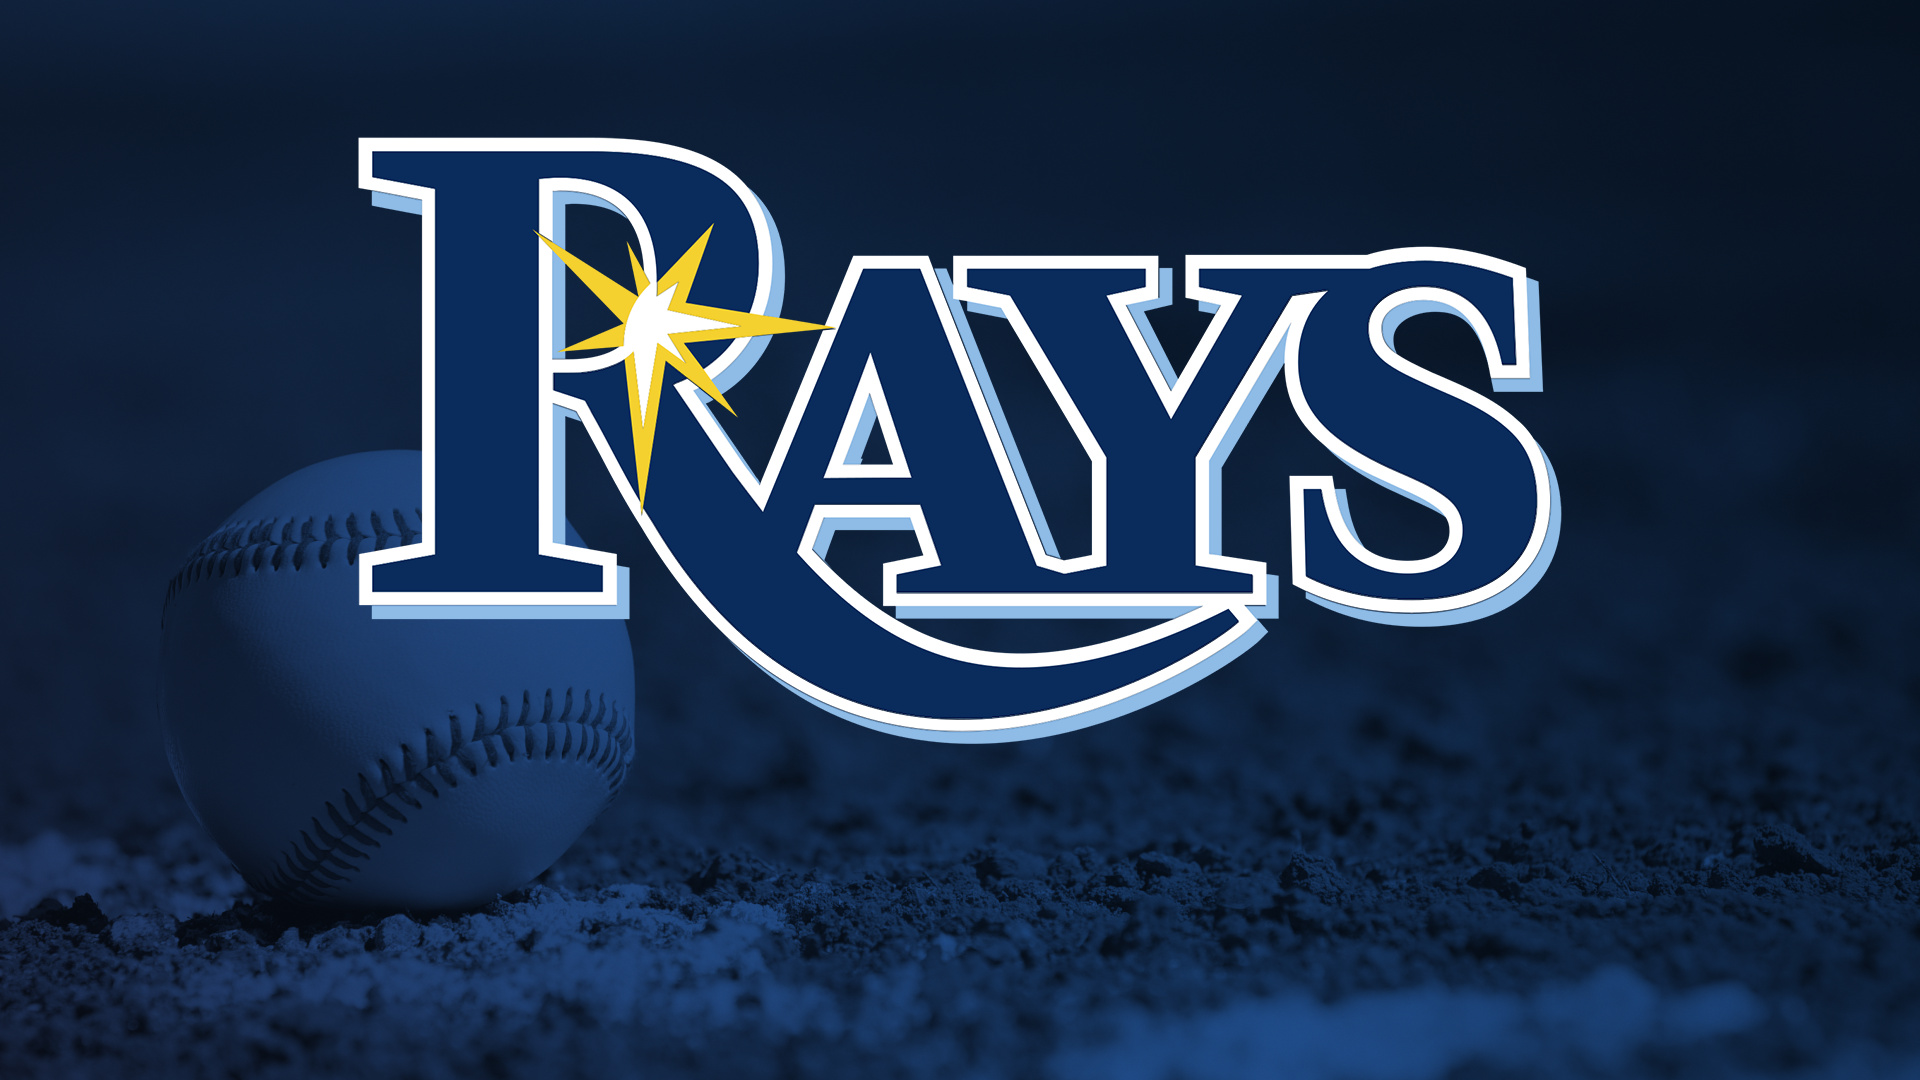 Tampa Bay Rays, Sports team logo, Baseball pride, Memorable design, 1920x1080 Full HD Desktop